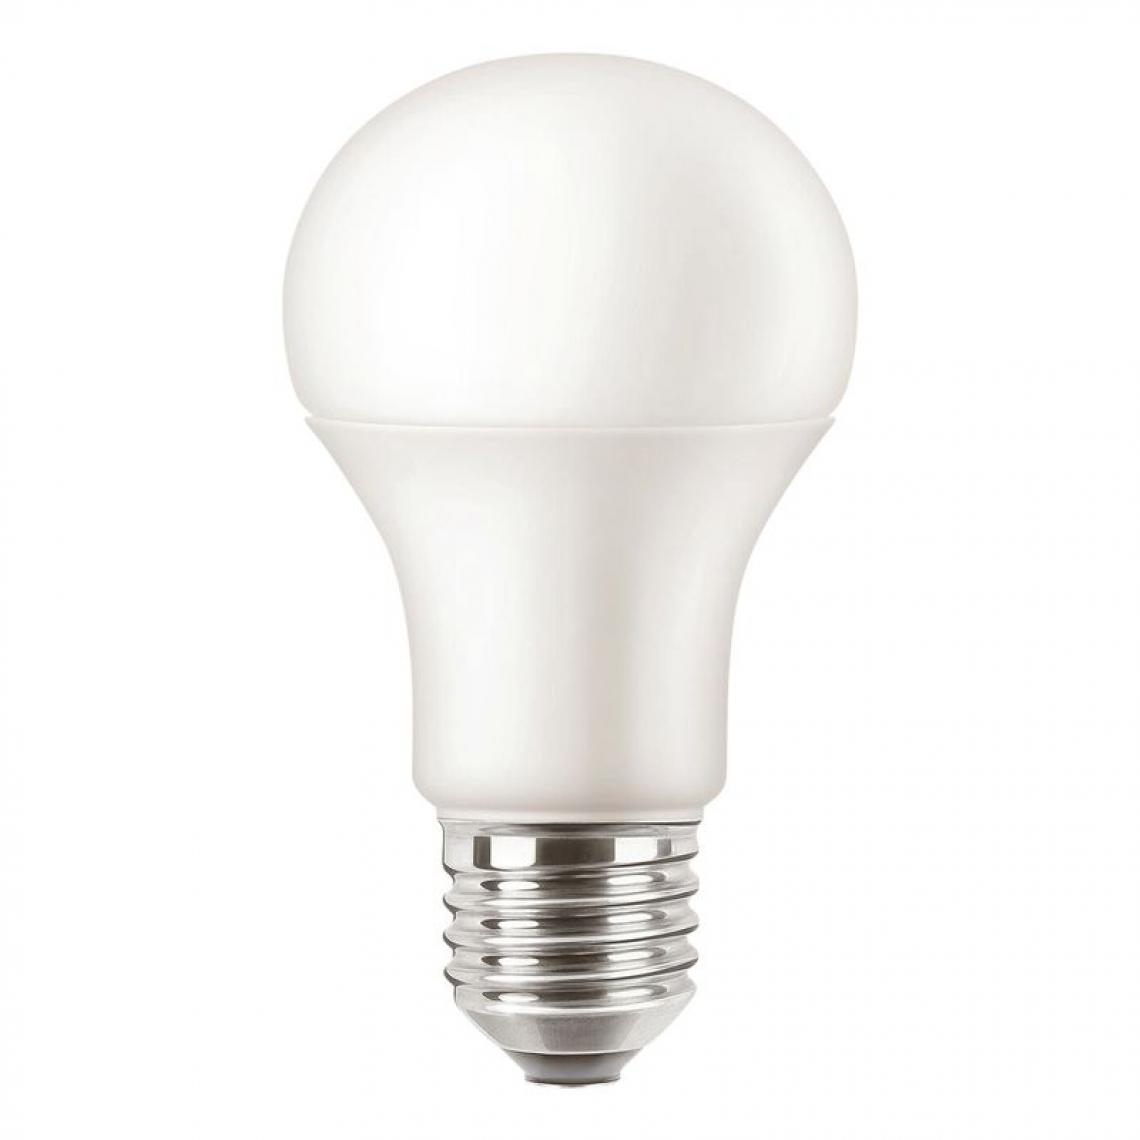 But - Ampoule LED standard E27 75w ATTRALUX Blanc chaud - Ampoules LED